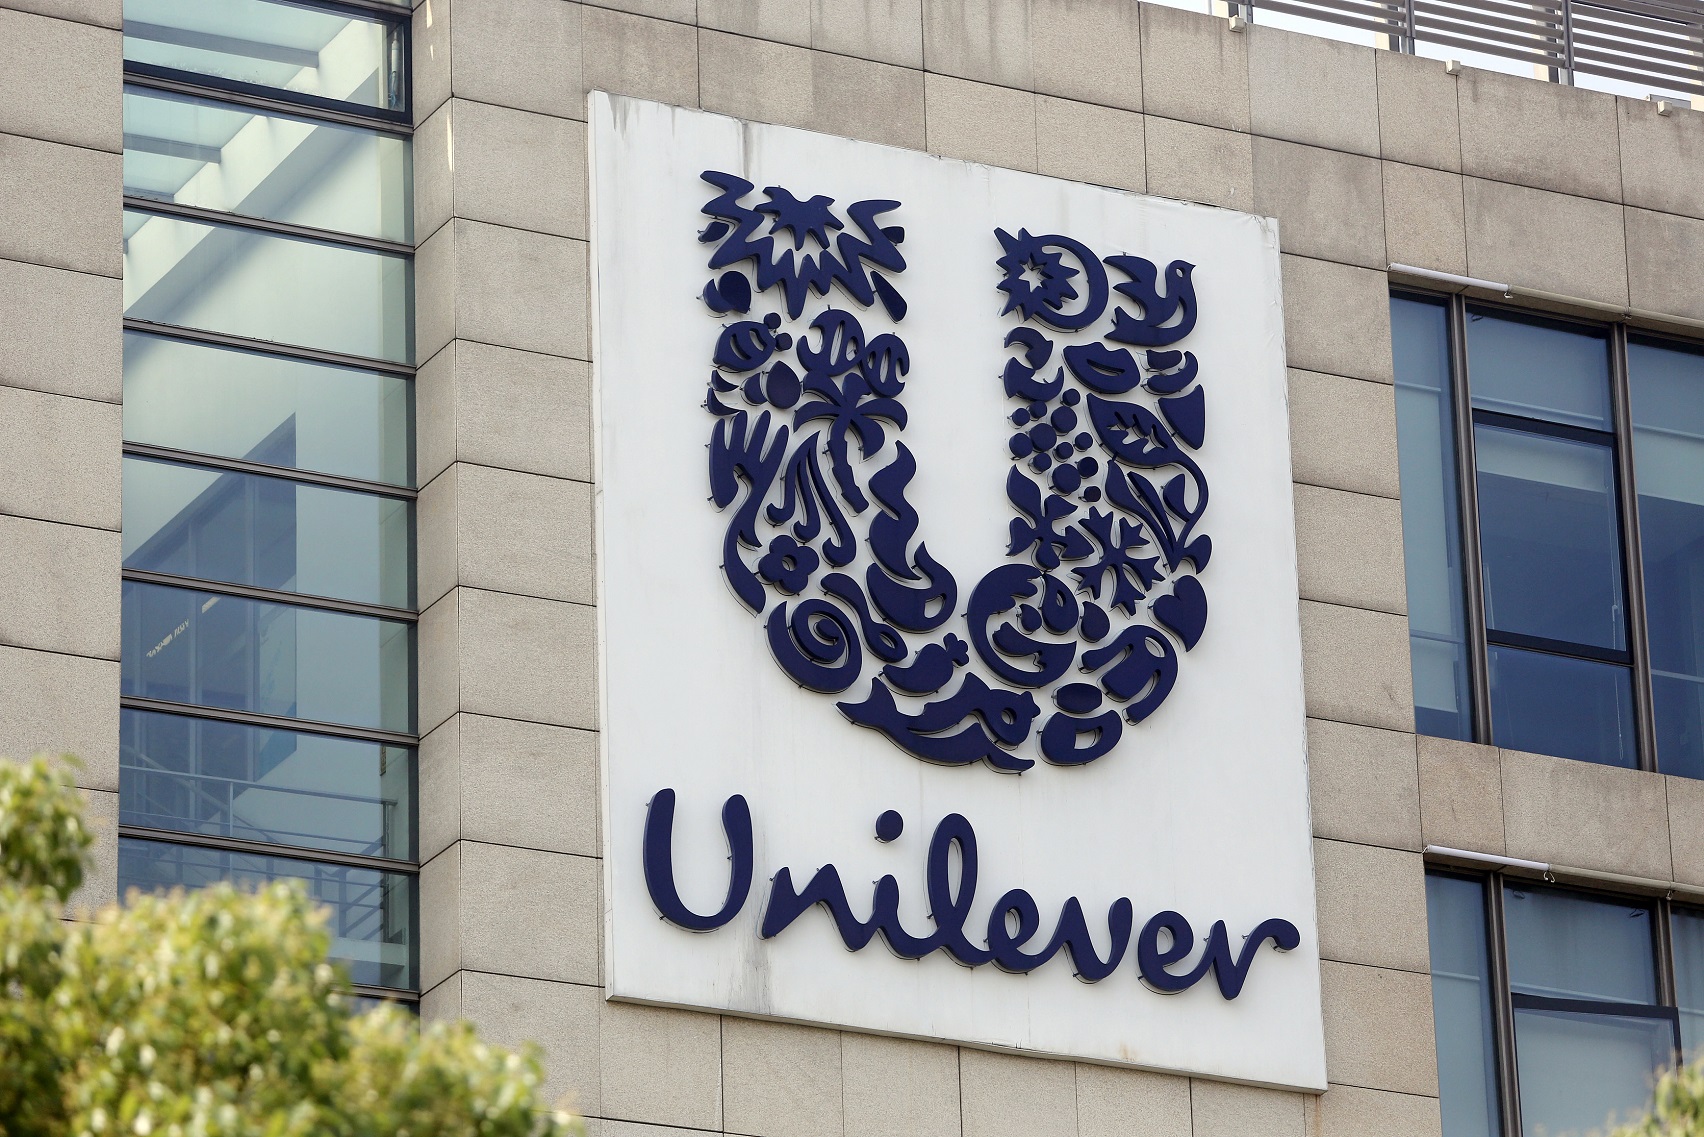 A Unilever está entre as empresas de escala mundial que assumiram compromissos de reduzir os seus impactos. Foto WENG LEI / IMAGINECHINA